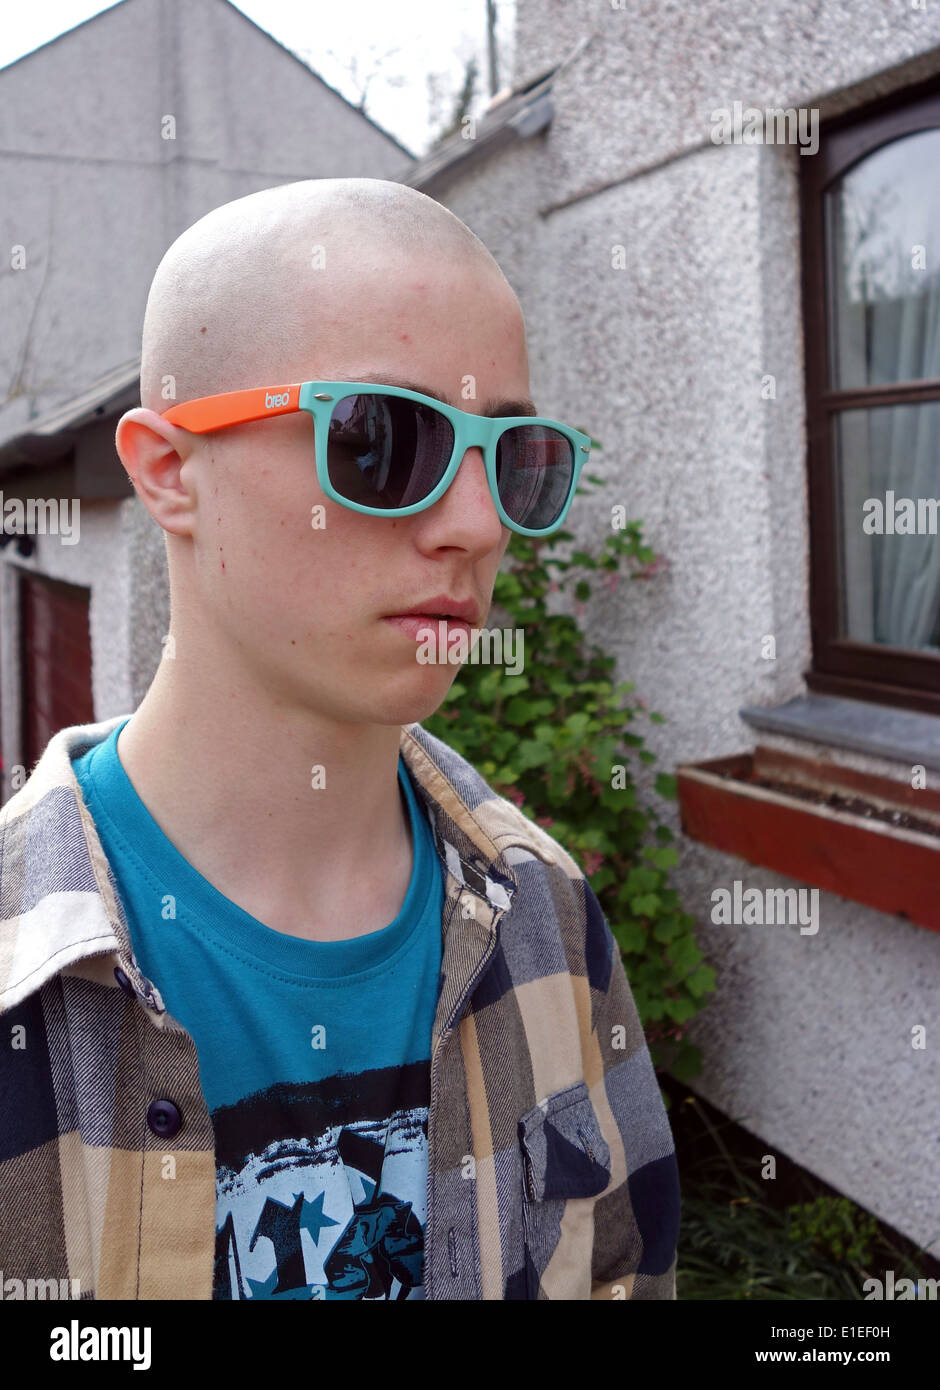 a teenage boy with a skinhead haircut Stock Photo